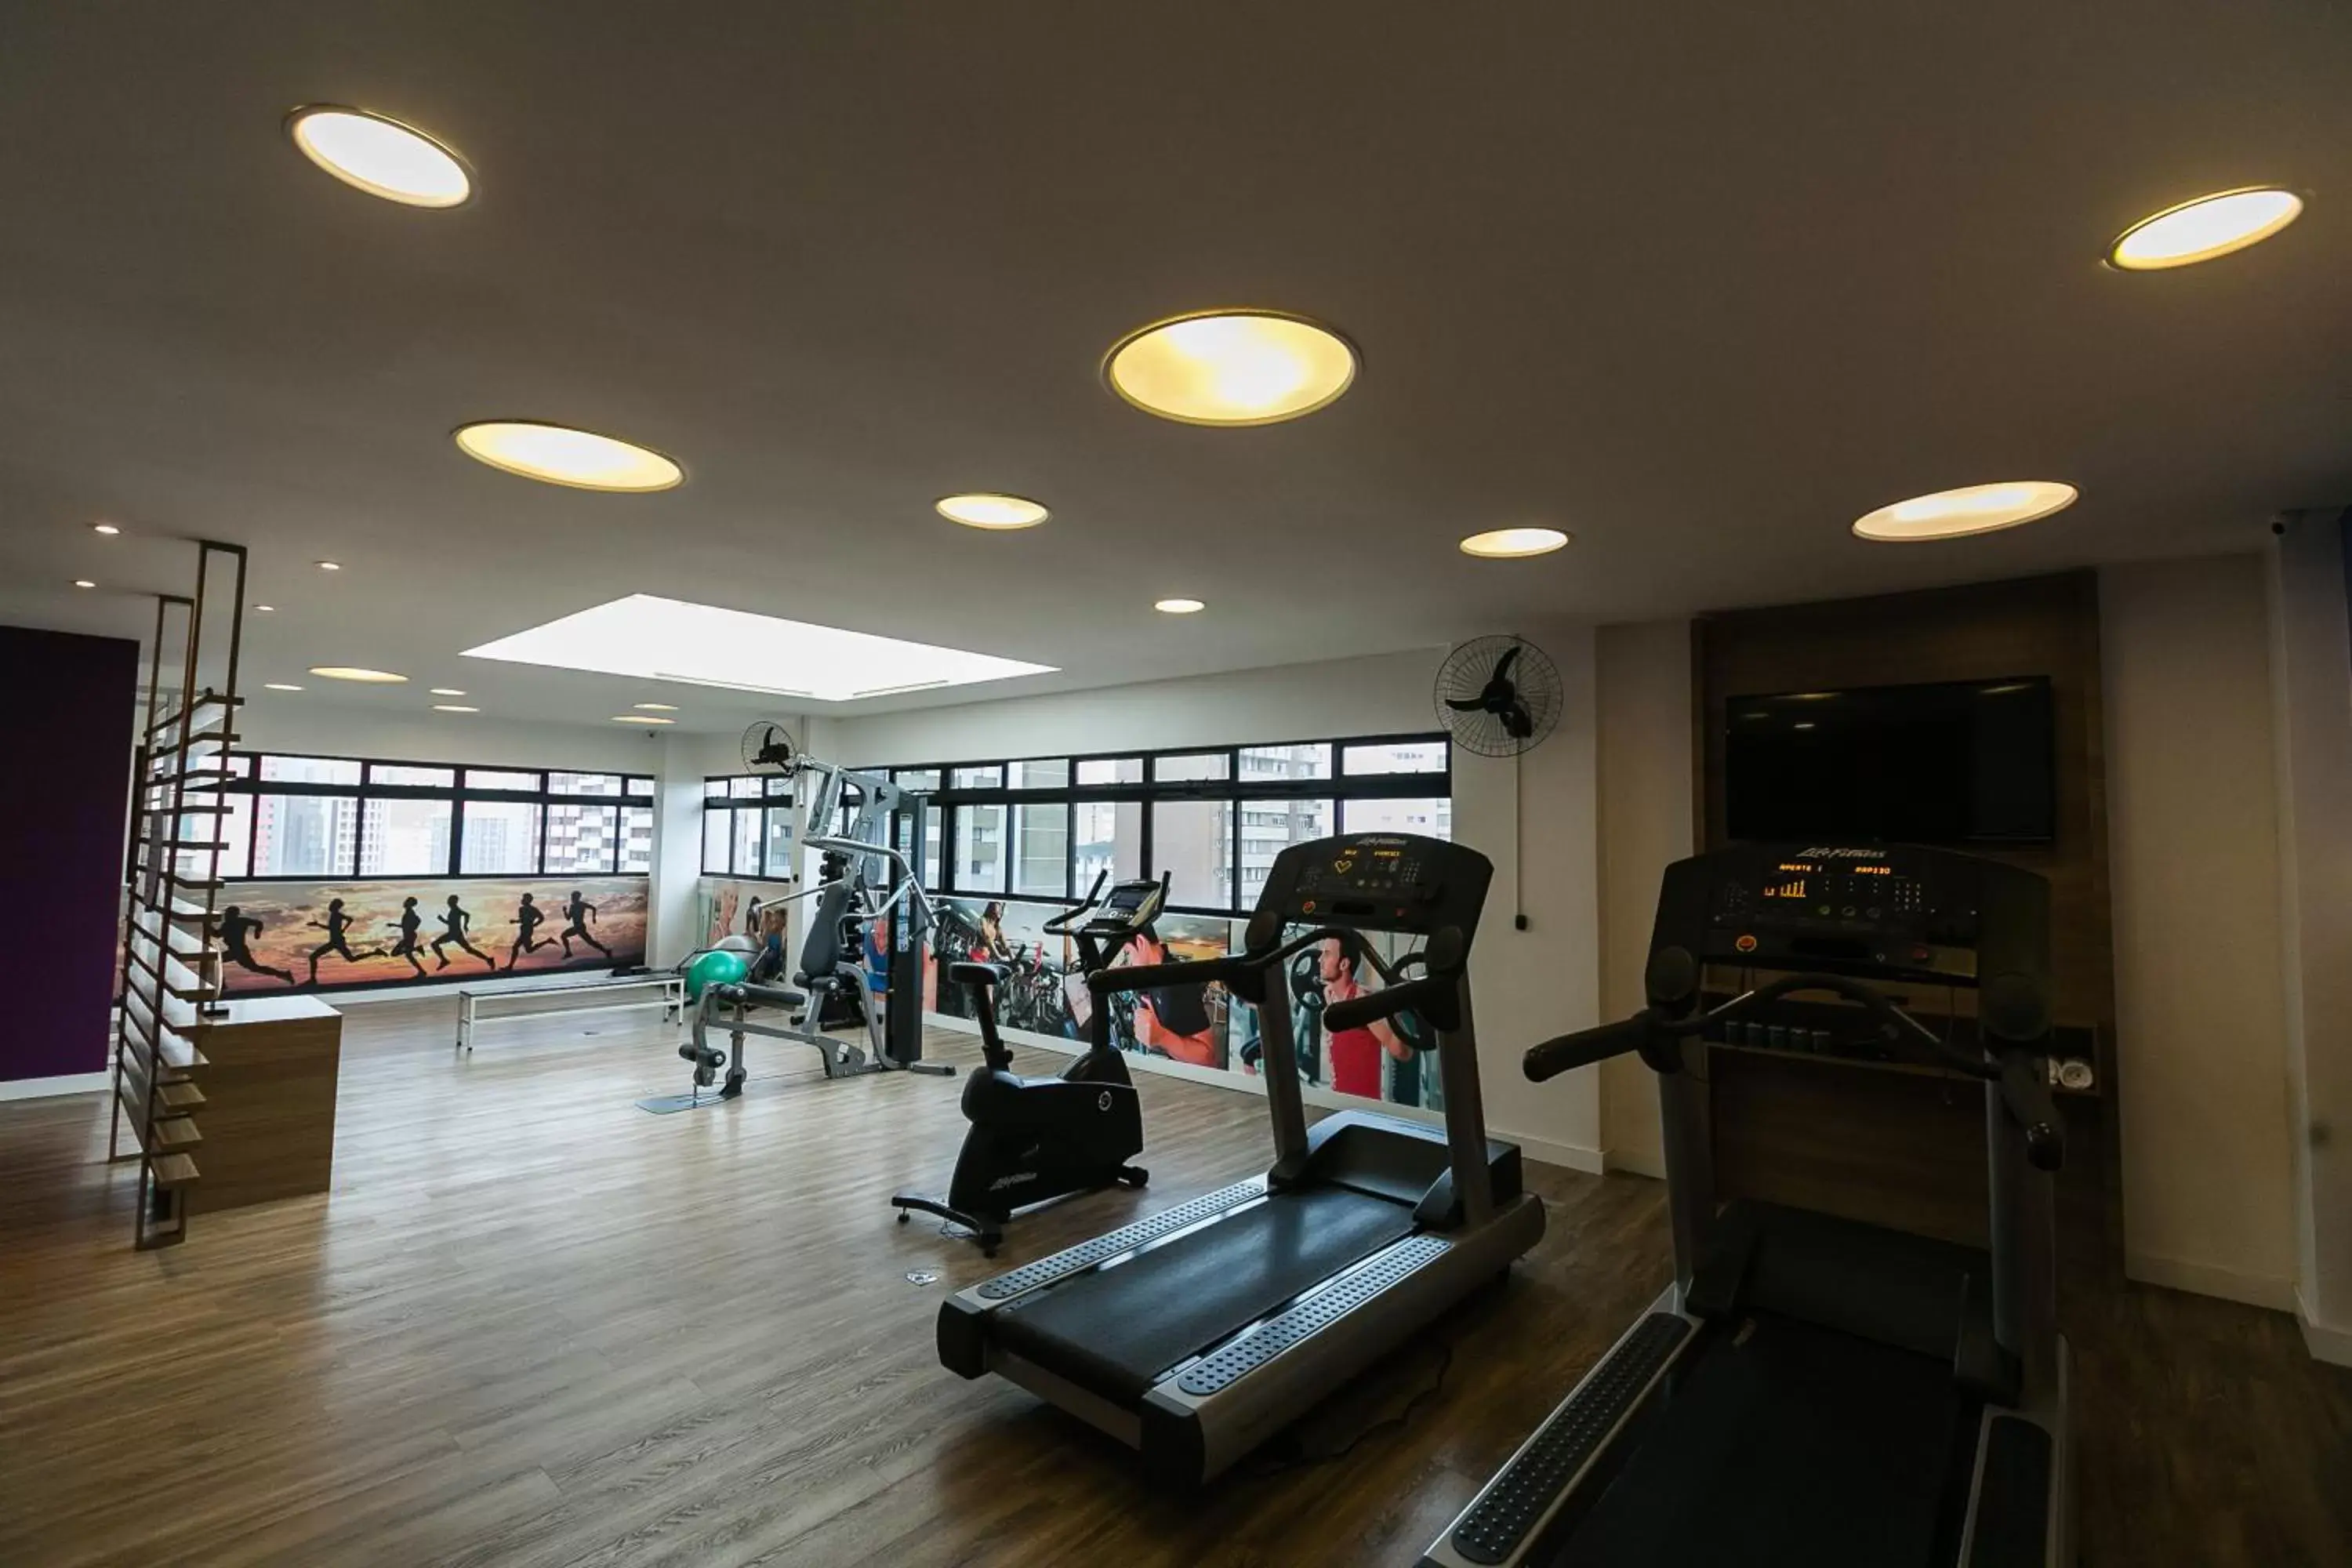 Fitness centre/facilities, Fitness Center/Facilities in Mercure Curitiba 7 de Setembro